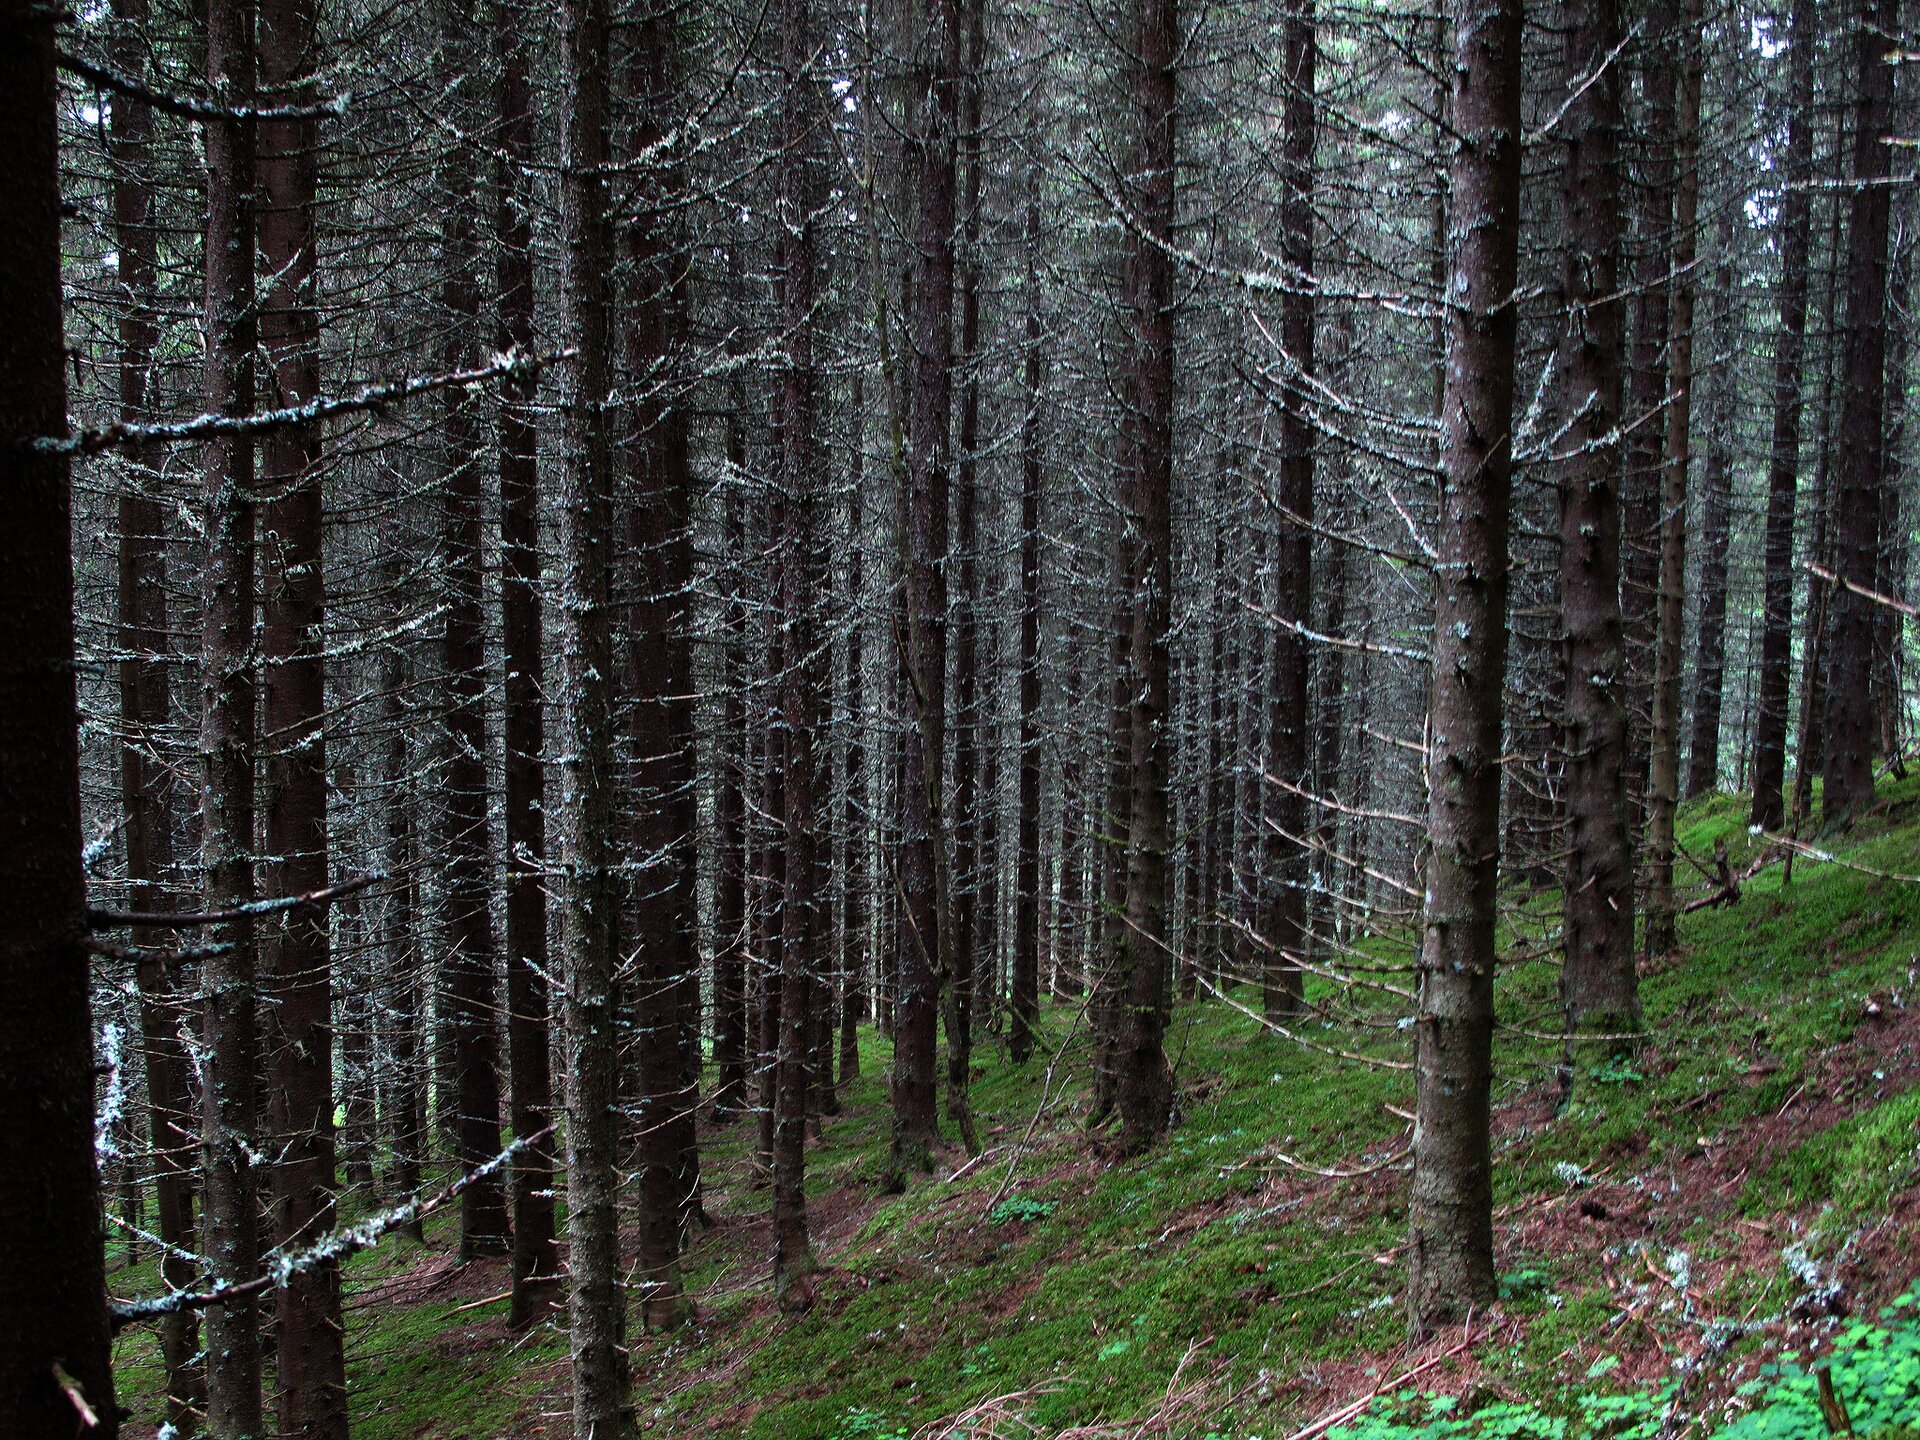 Fotografia przedstawia wnętrze boru świerkowego. Pnie o ciemnej korze i licznych suchych gałęziach stoją gęsto. Do dna lasu dociera niewiele światła, więc rosną nieliczne rośliny.